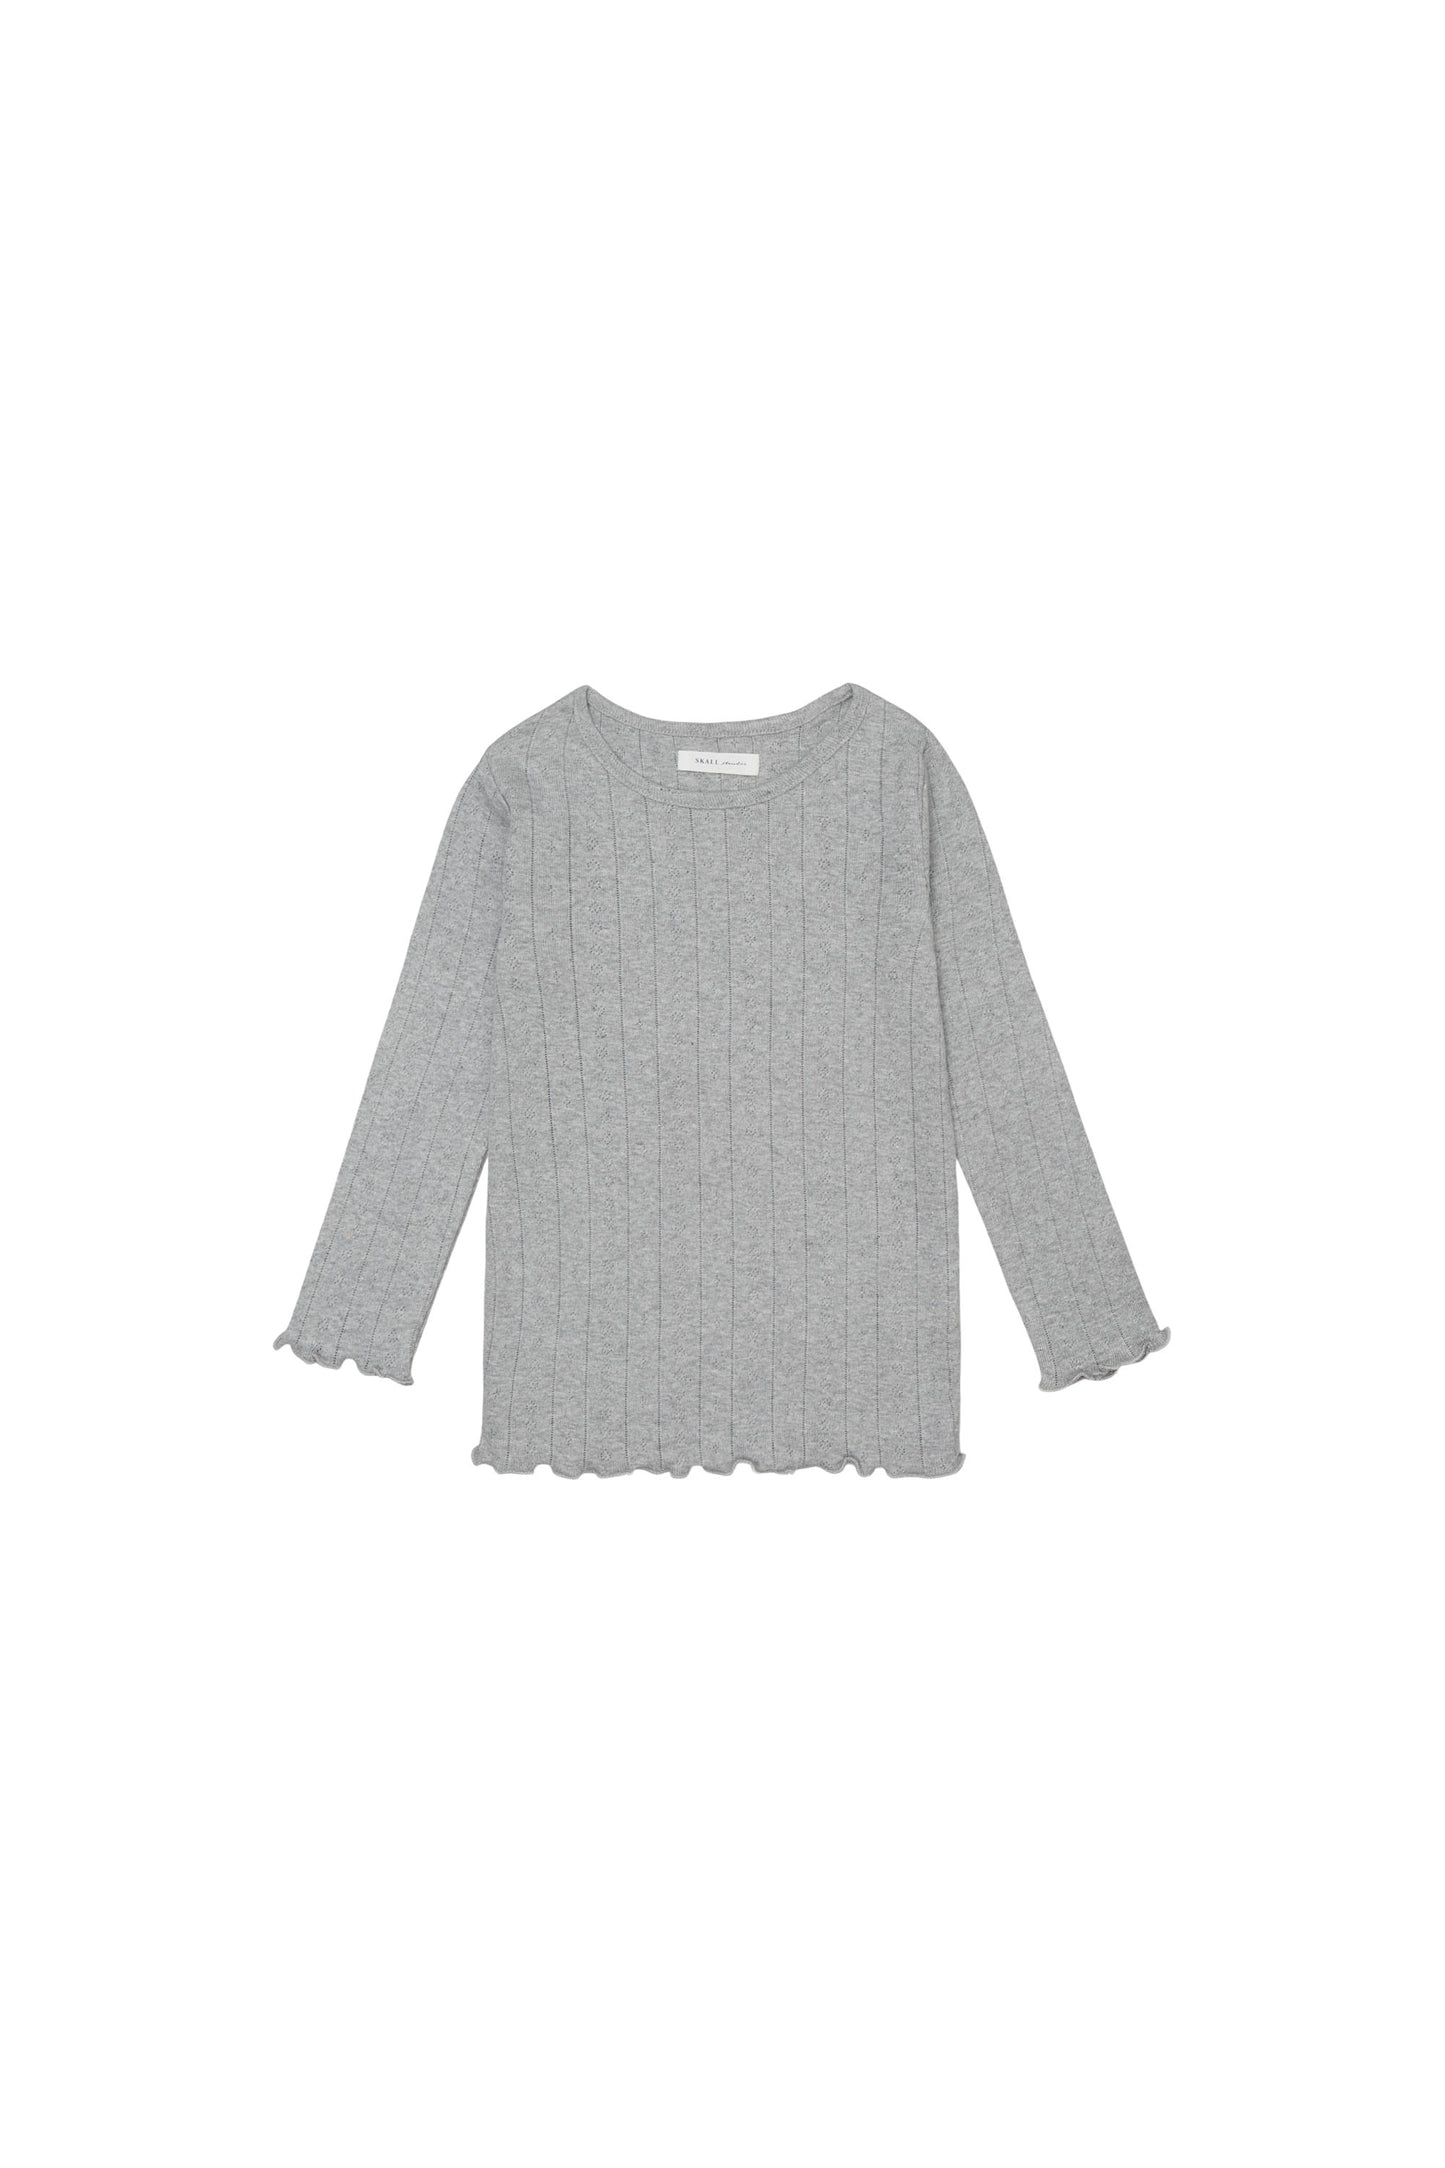 Skall Musling - Edie blouse Musling - Grey melange